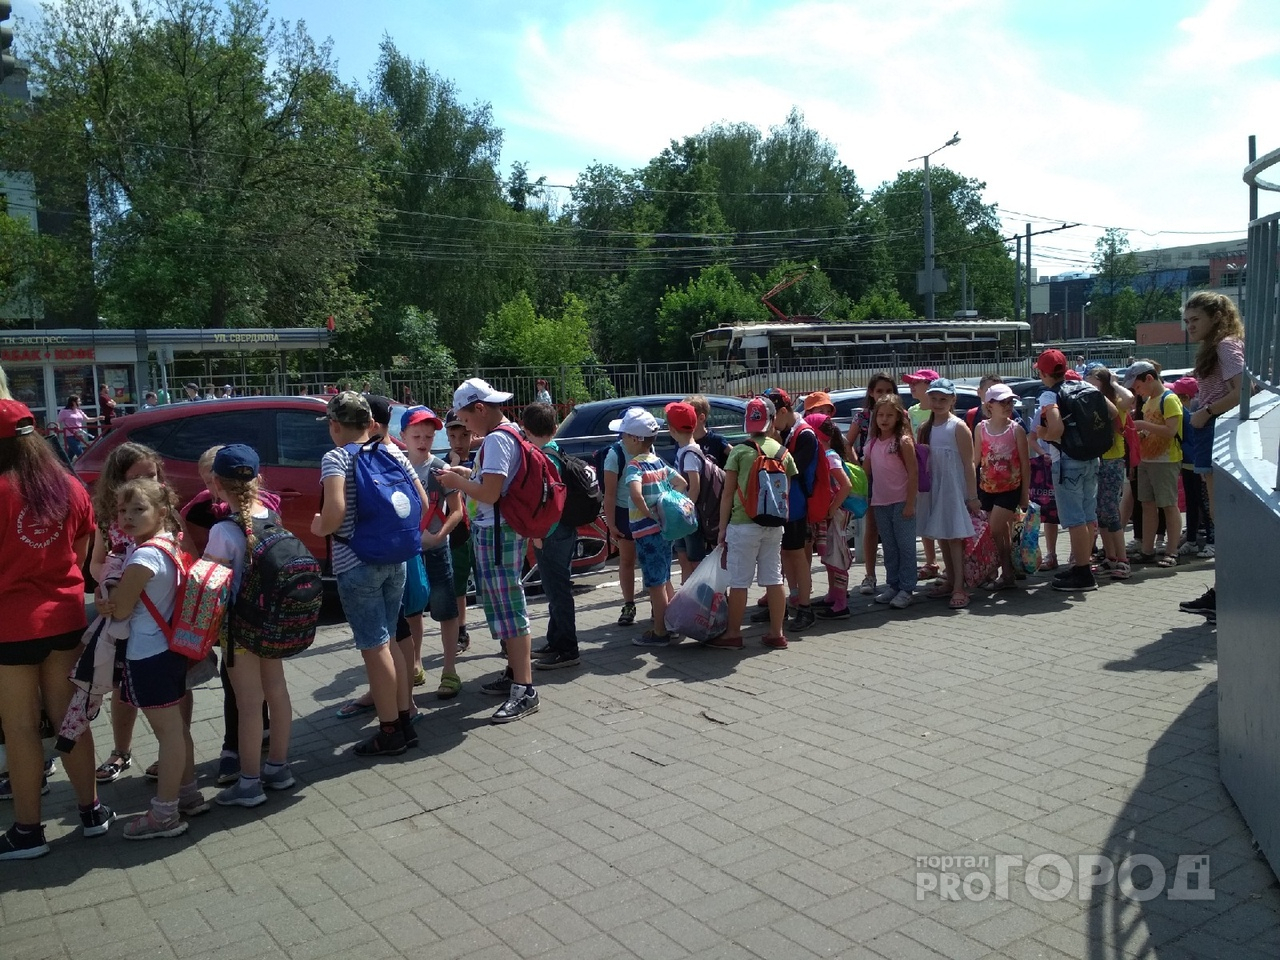 "Чтоб жизнь малиной не казалась": ярославцы возмущены скачком цен на детские кружки